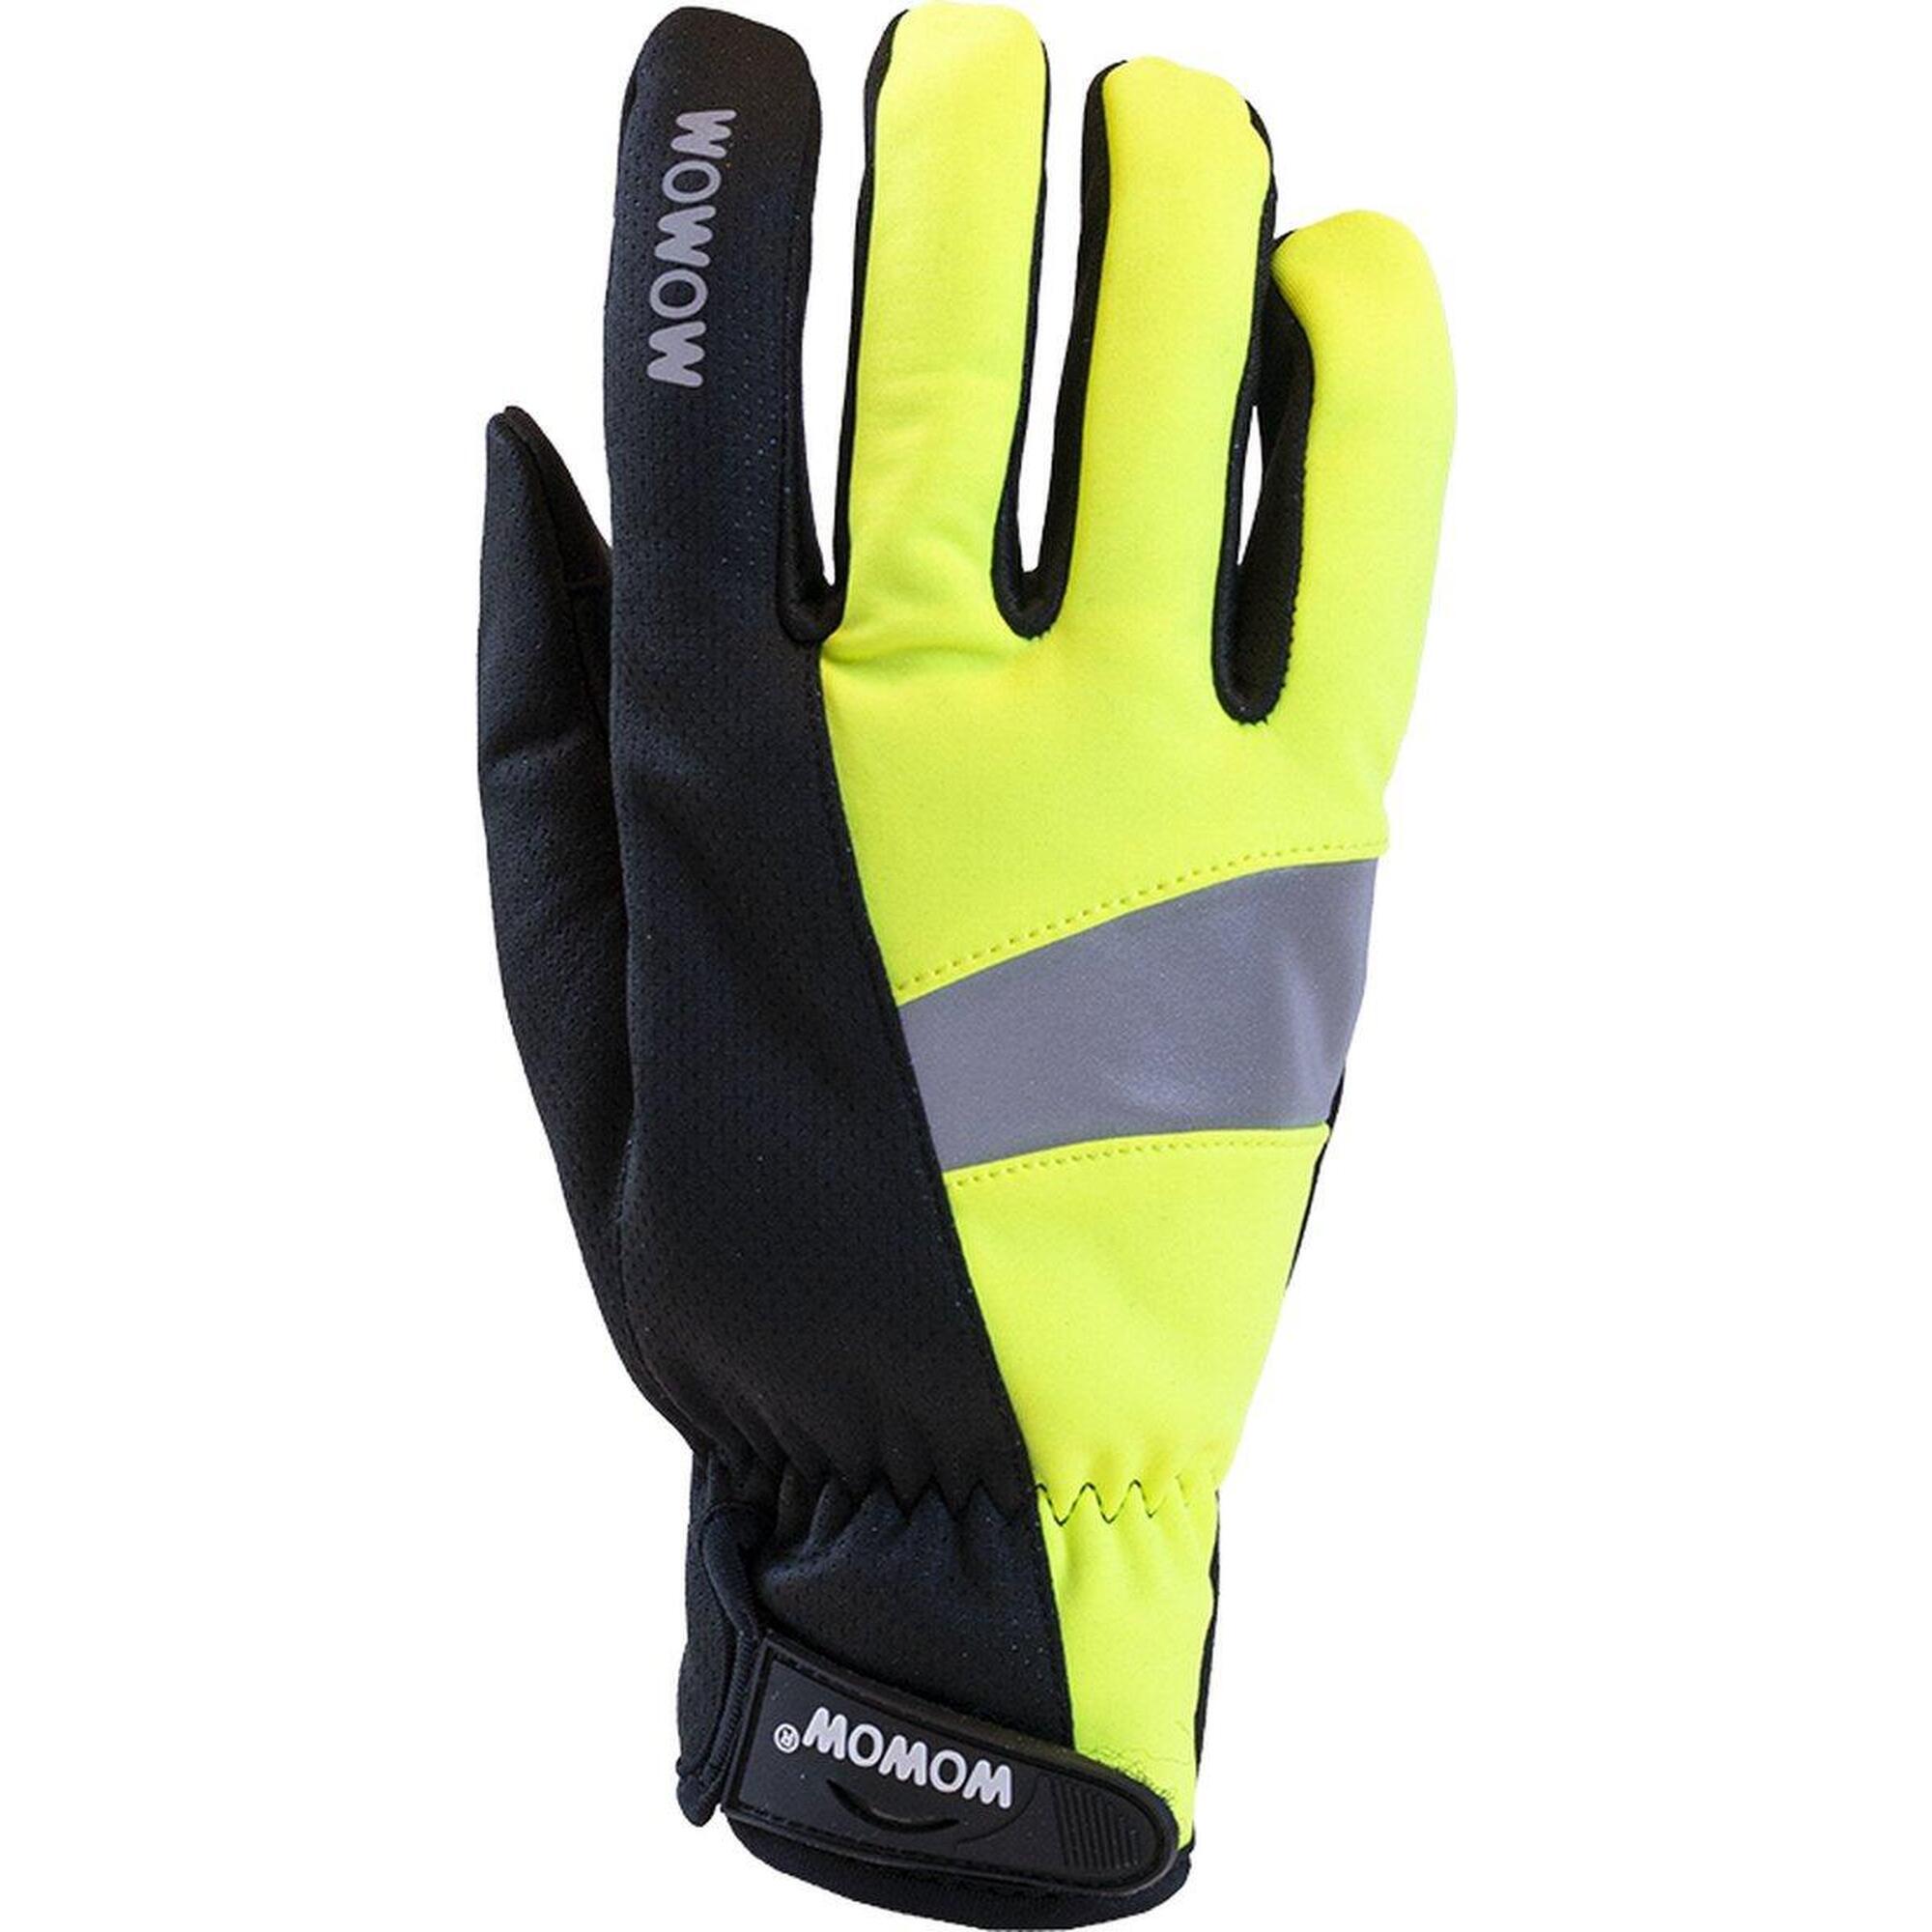 Fahrradhandschuhe in fluo winddicht Größe L - Cycle Gloves 2.0 gelb/schwarz